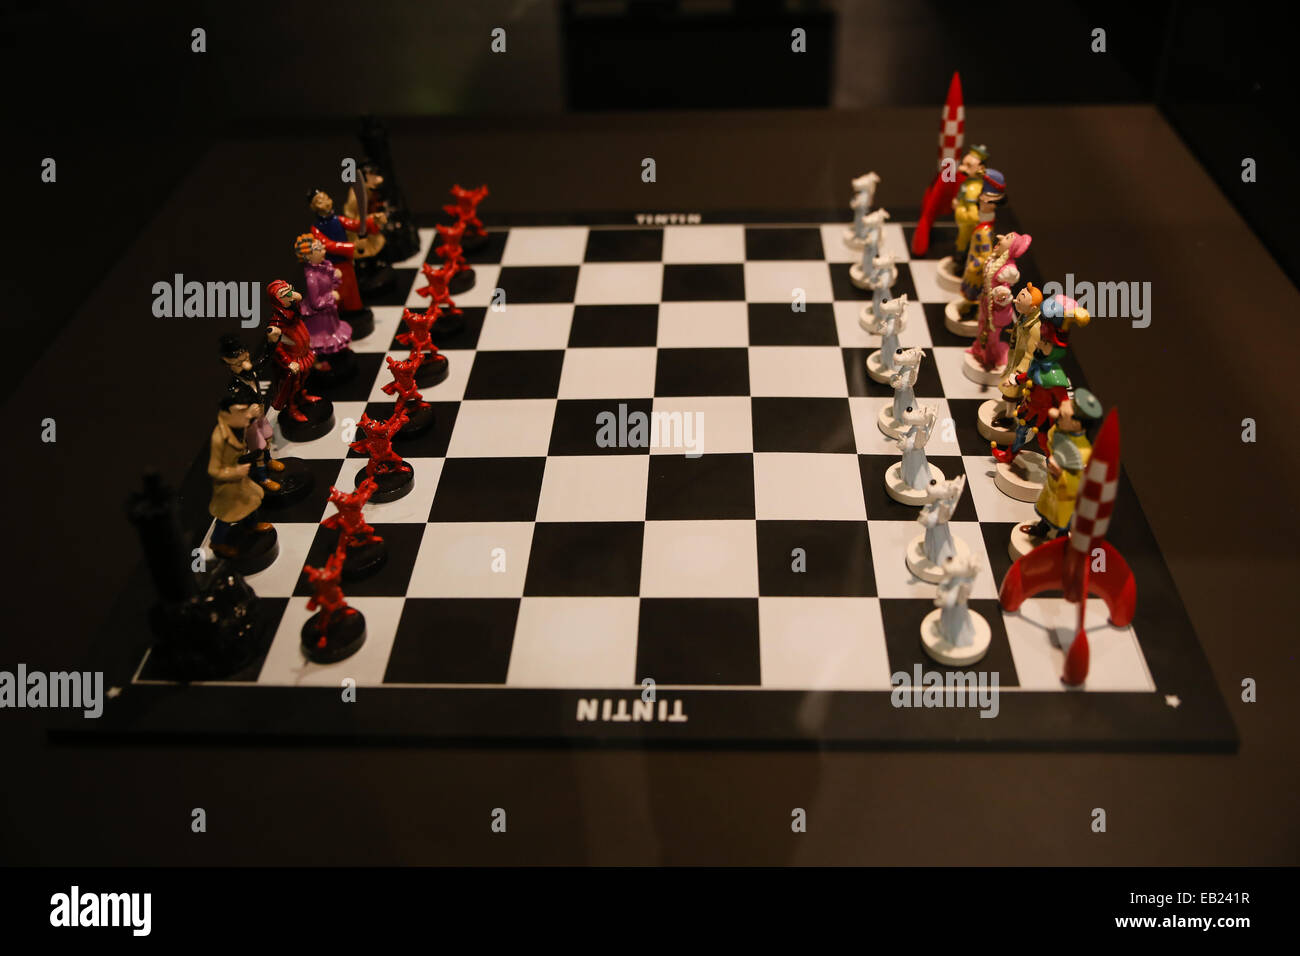 Tin Tin caractère comique de livre chess board Banque D'Images